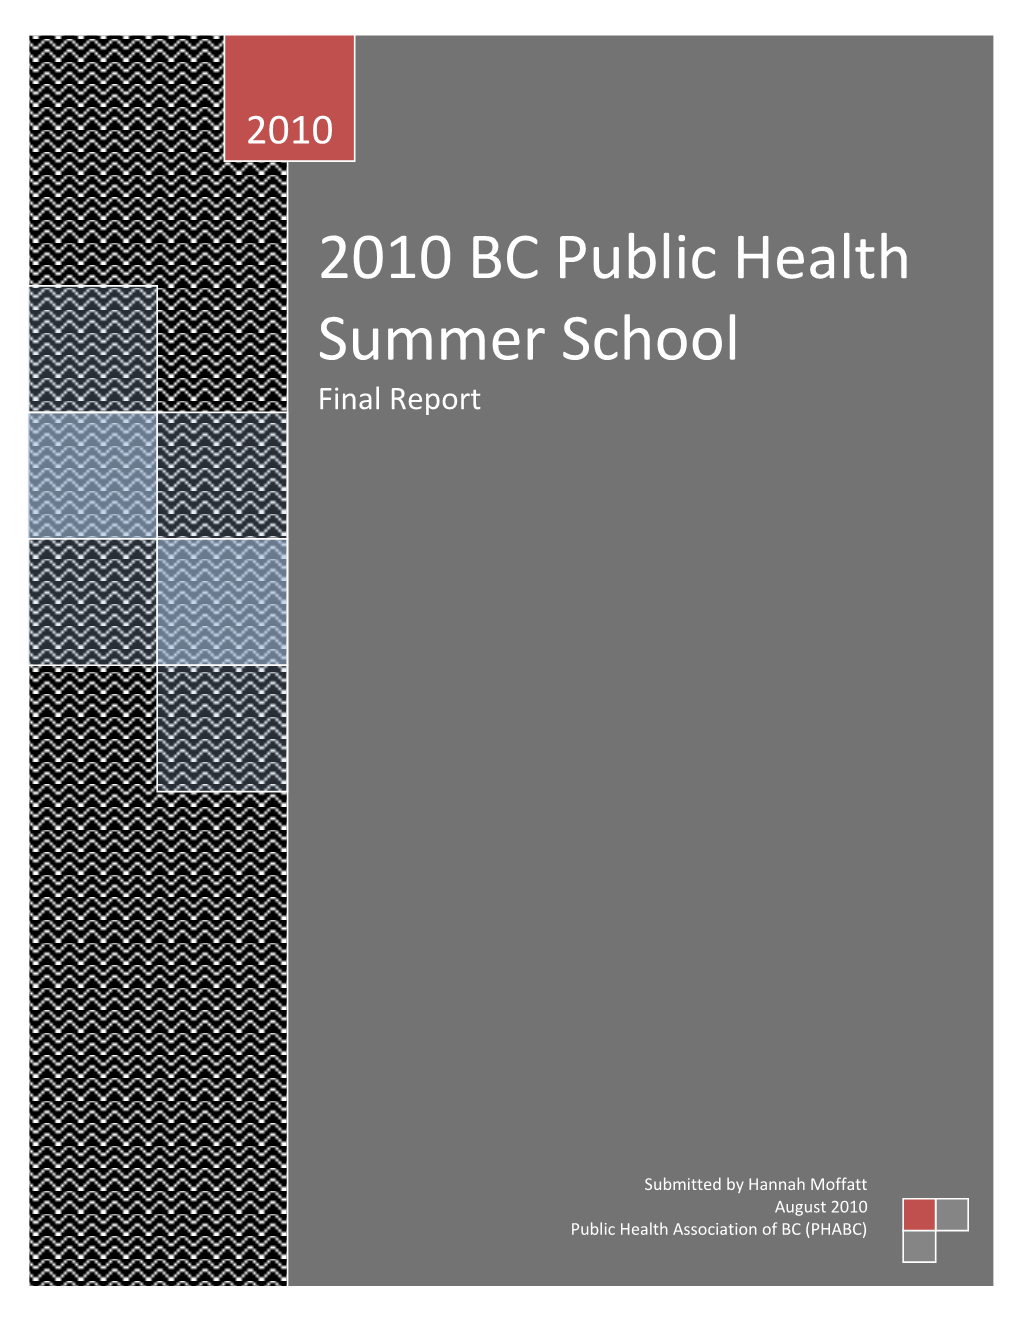 BC Public Health Summer School